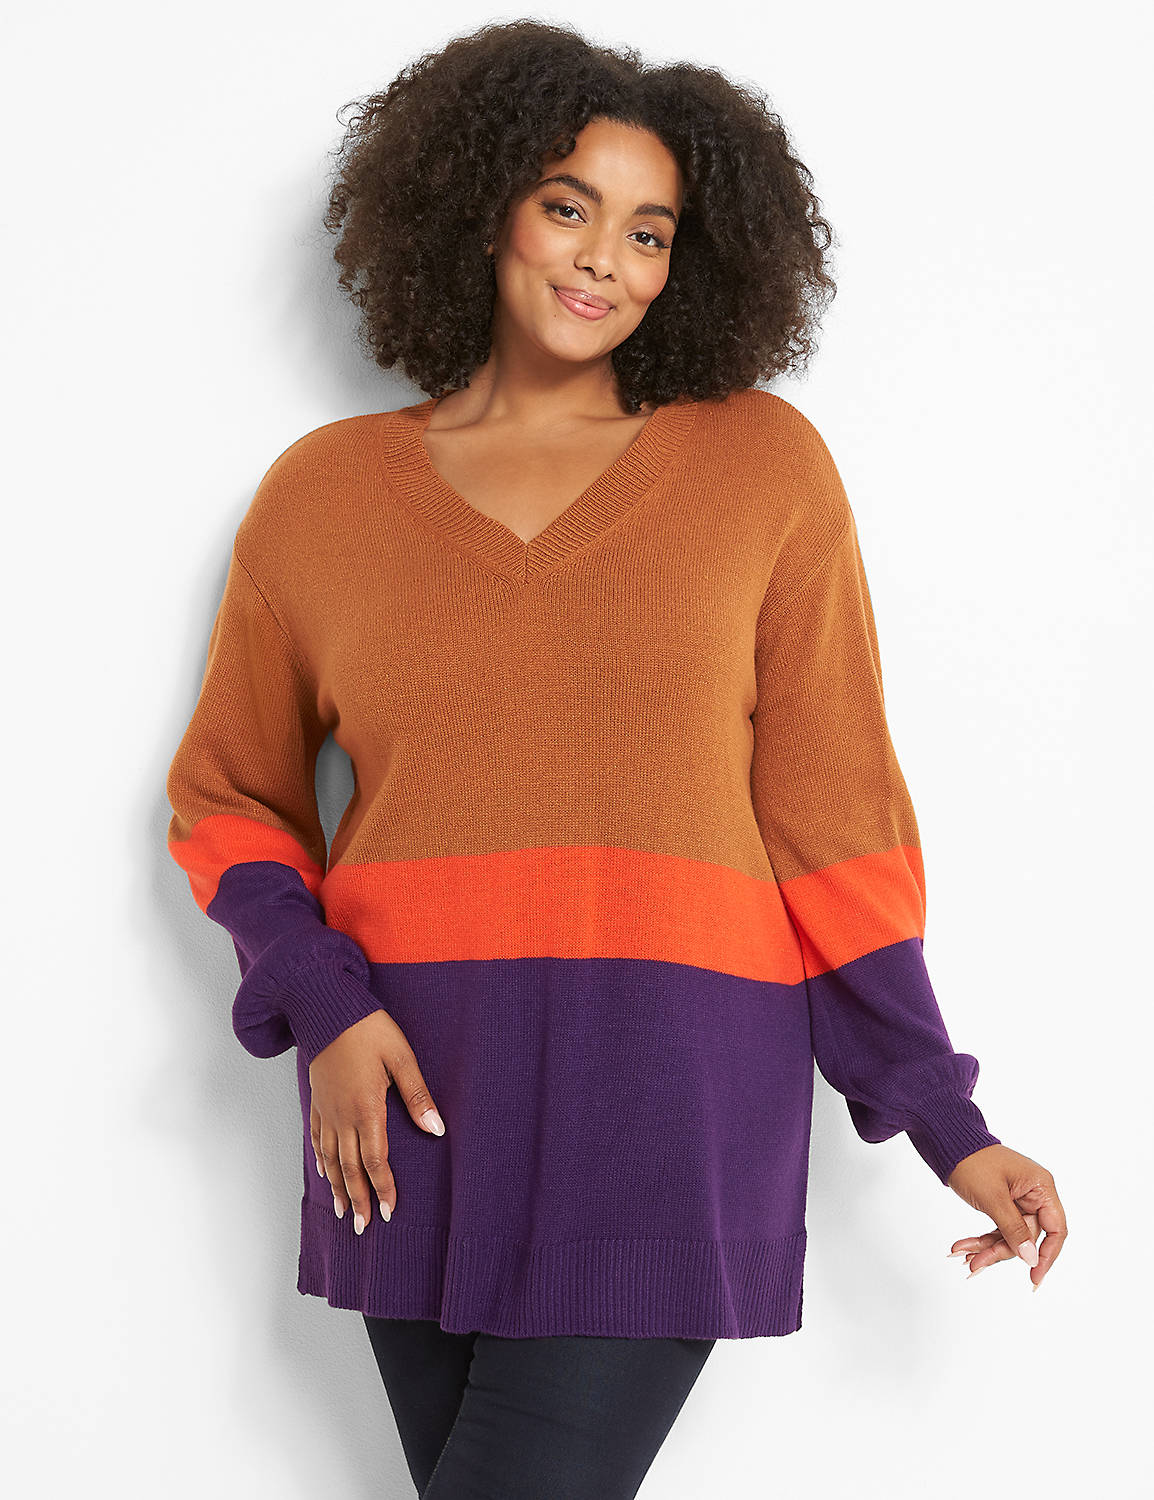 Blouson-Sleeve Tunic Sweater Product Image 1